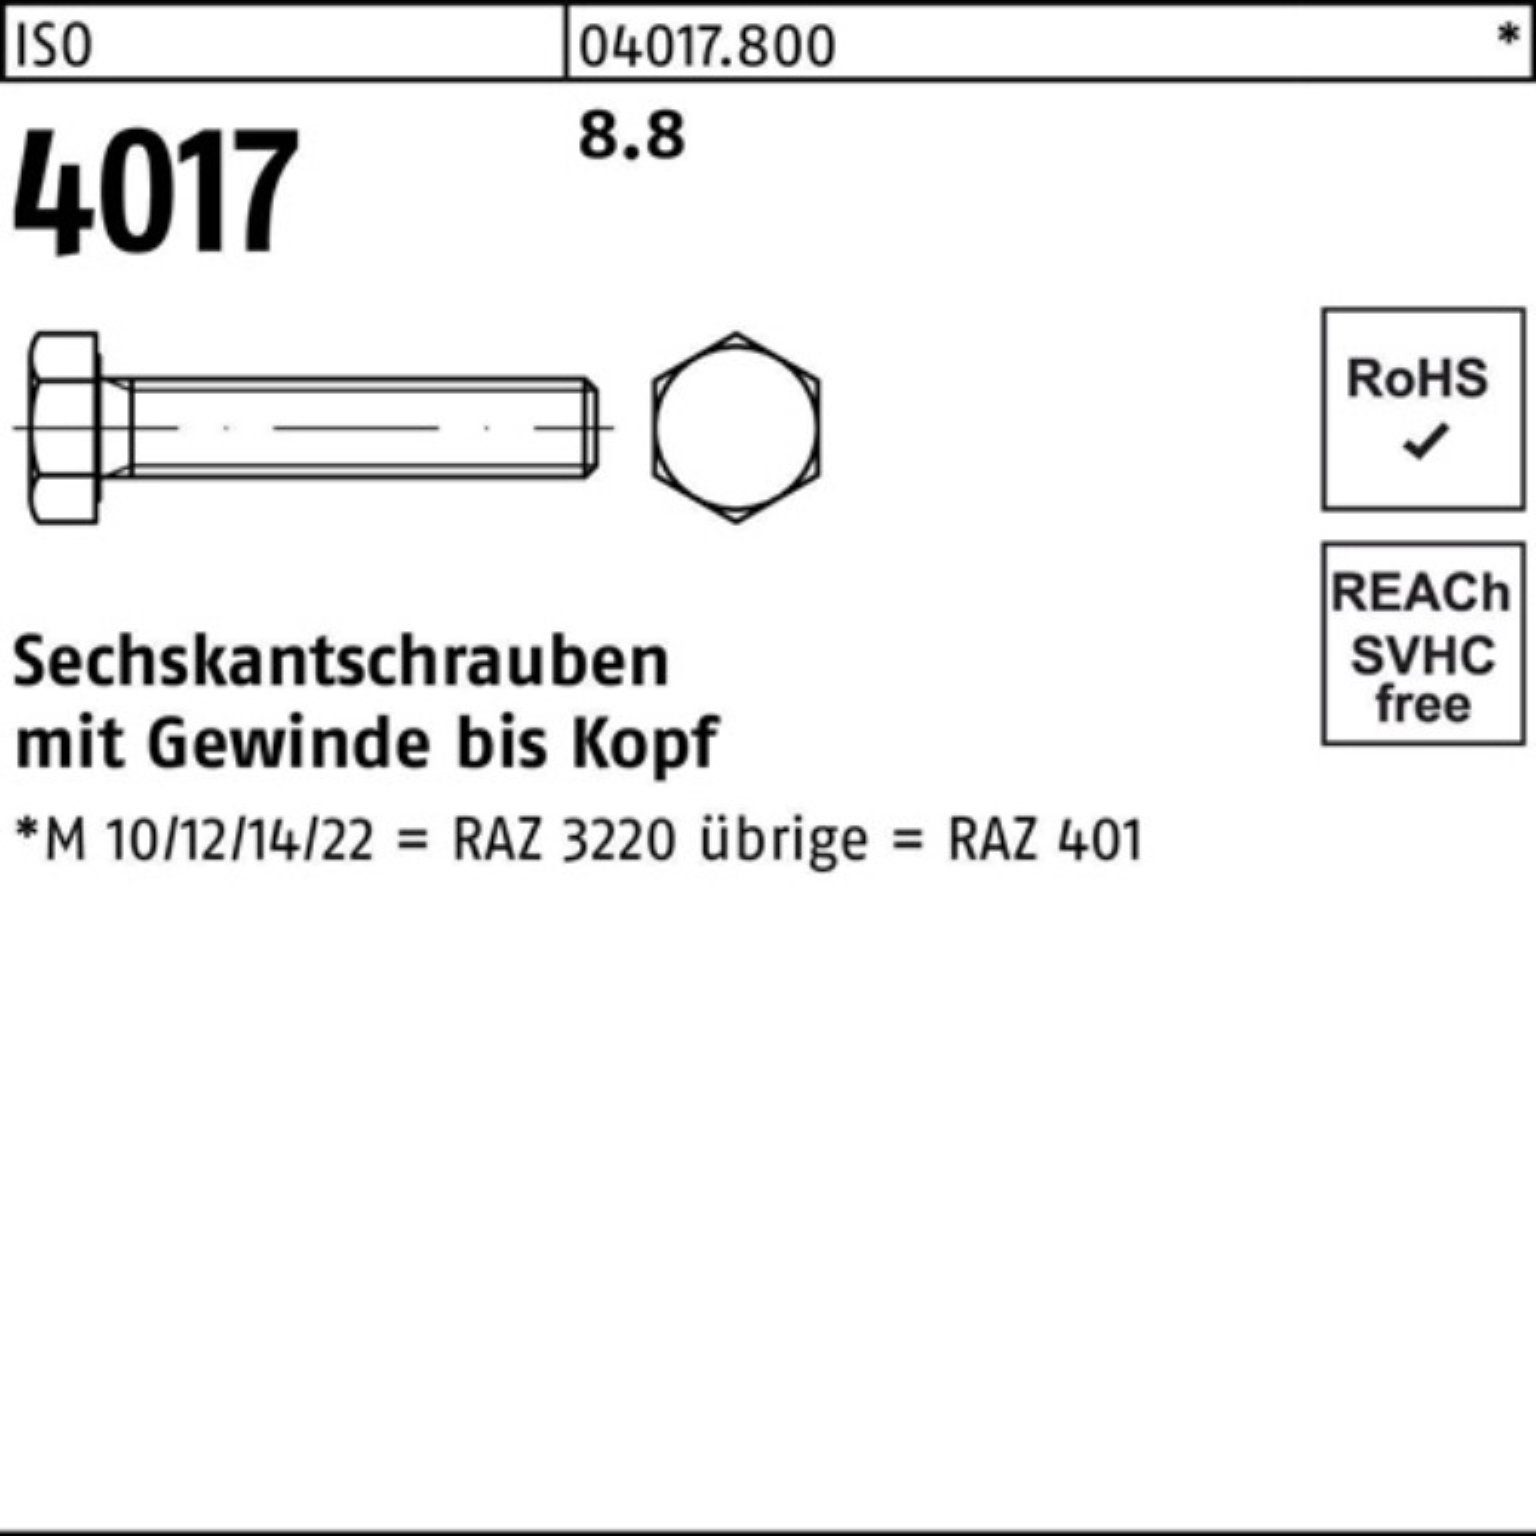 140 8.8 Bufab Sechskantschraube Stück M48x 401 ISO Pack 100er ISO 4017 1 Sechskantschraube VG